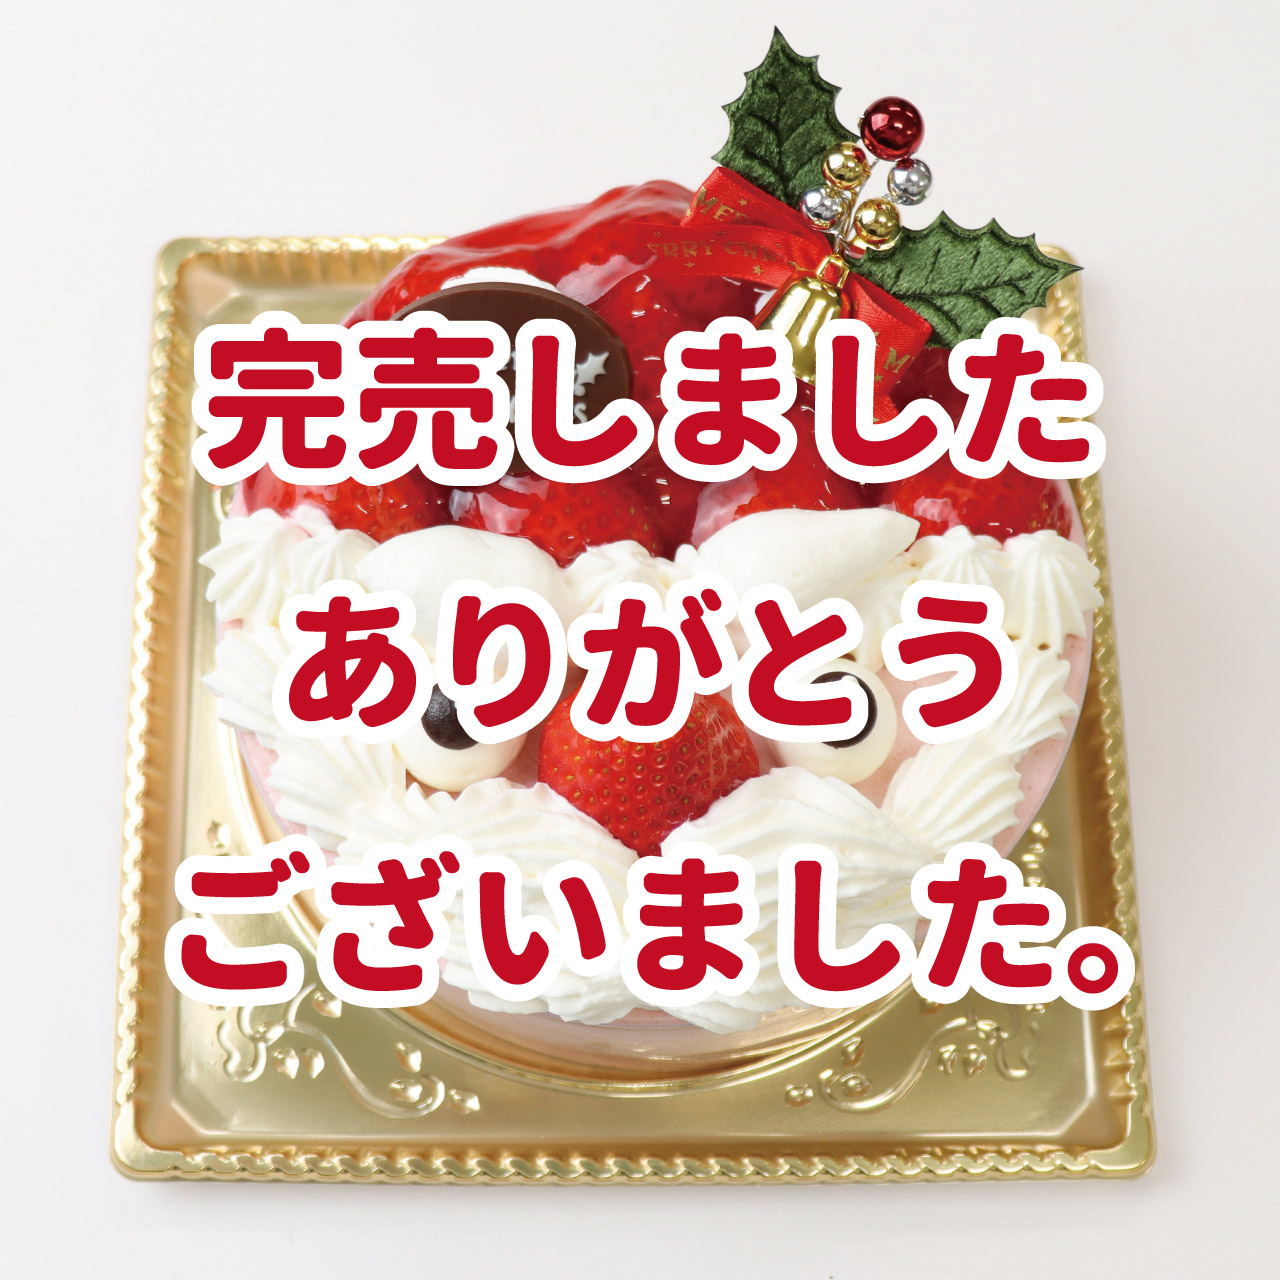 【12/21-25店頭受取】苺のサンタクロース